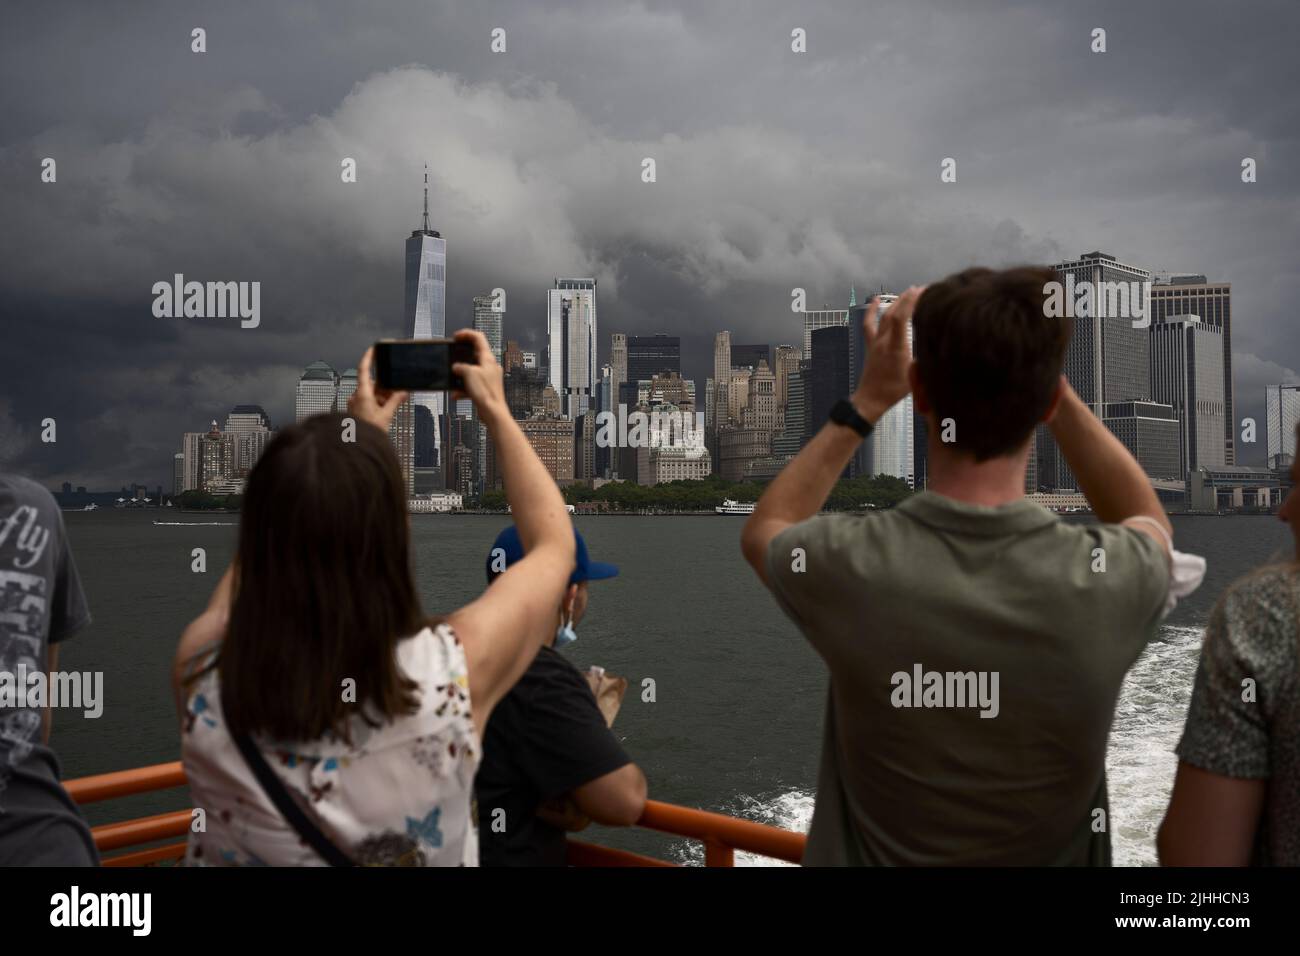 New York, États-Unis. 18 juillet 2022. Les passagers du ferry de Staten Island photographient des tempêtes spectaculaires au-dessus du bas de Manhattan alors que les prévisionnistes prédisent des températures supérieures à 90 degrés Fahrenheit (32 degrés Celsius) cette semaine Banque D'Images